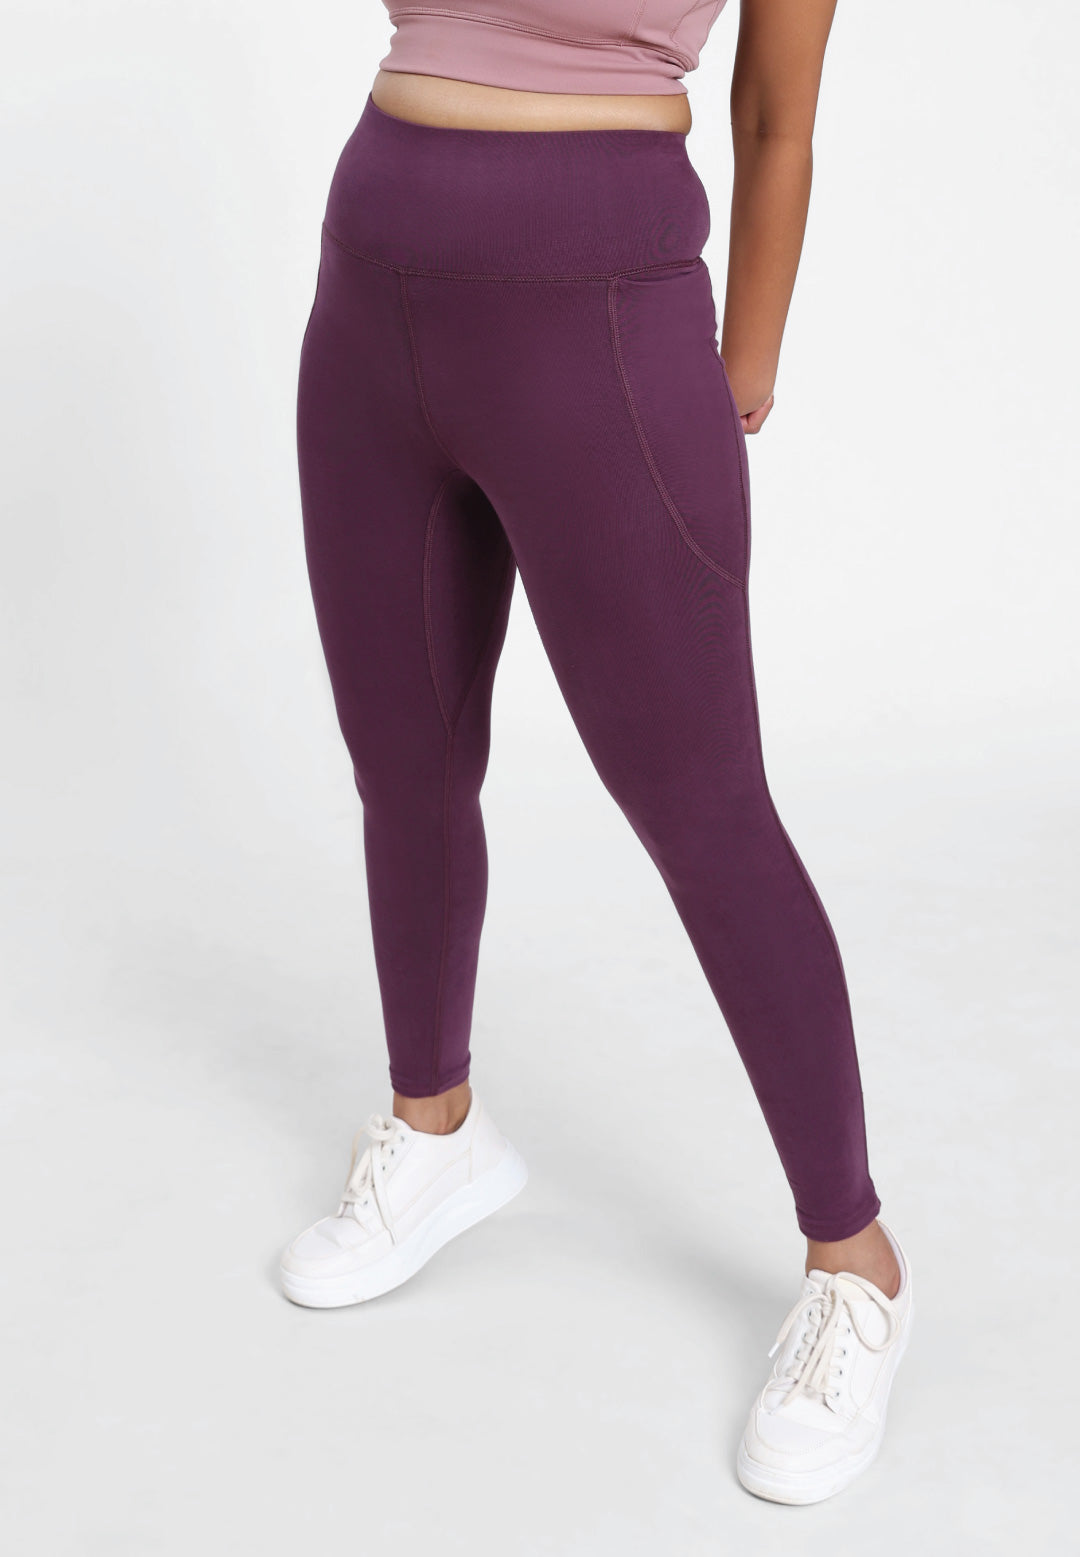 Buy Women's Purple Leggings & Tights Online from BlissClub